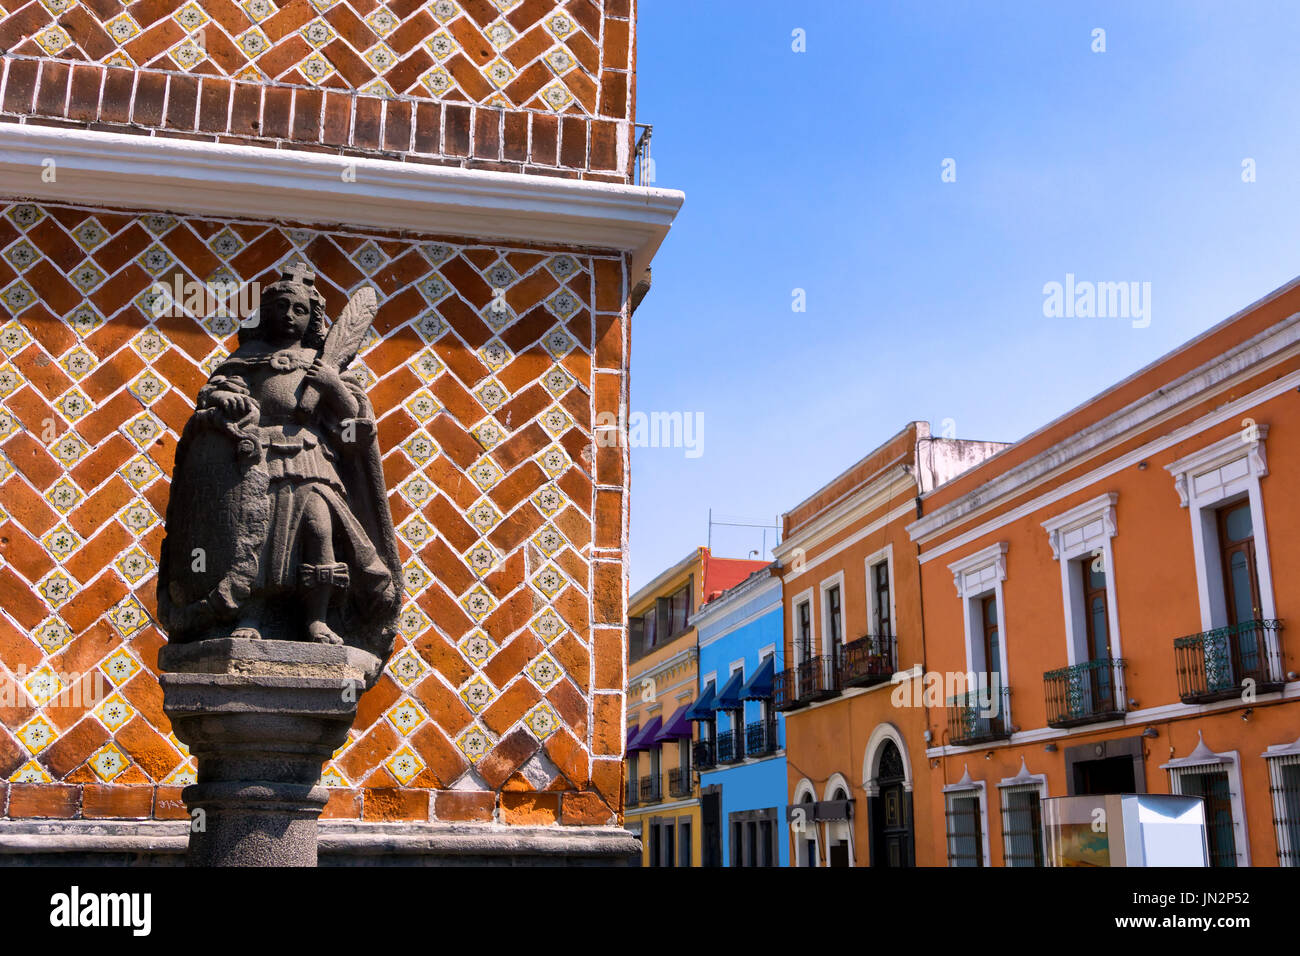 Statue avec ses maisons coloniales dans street dans le centre-ville de Puebla, Mexique Banque D'Images